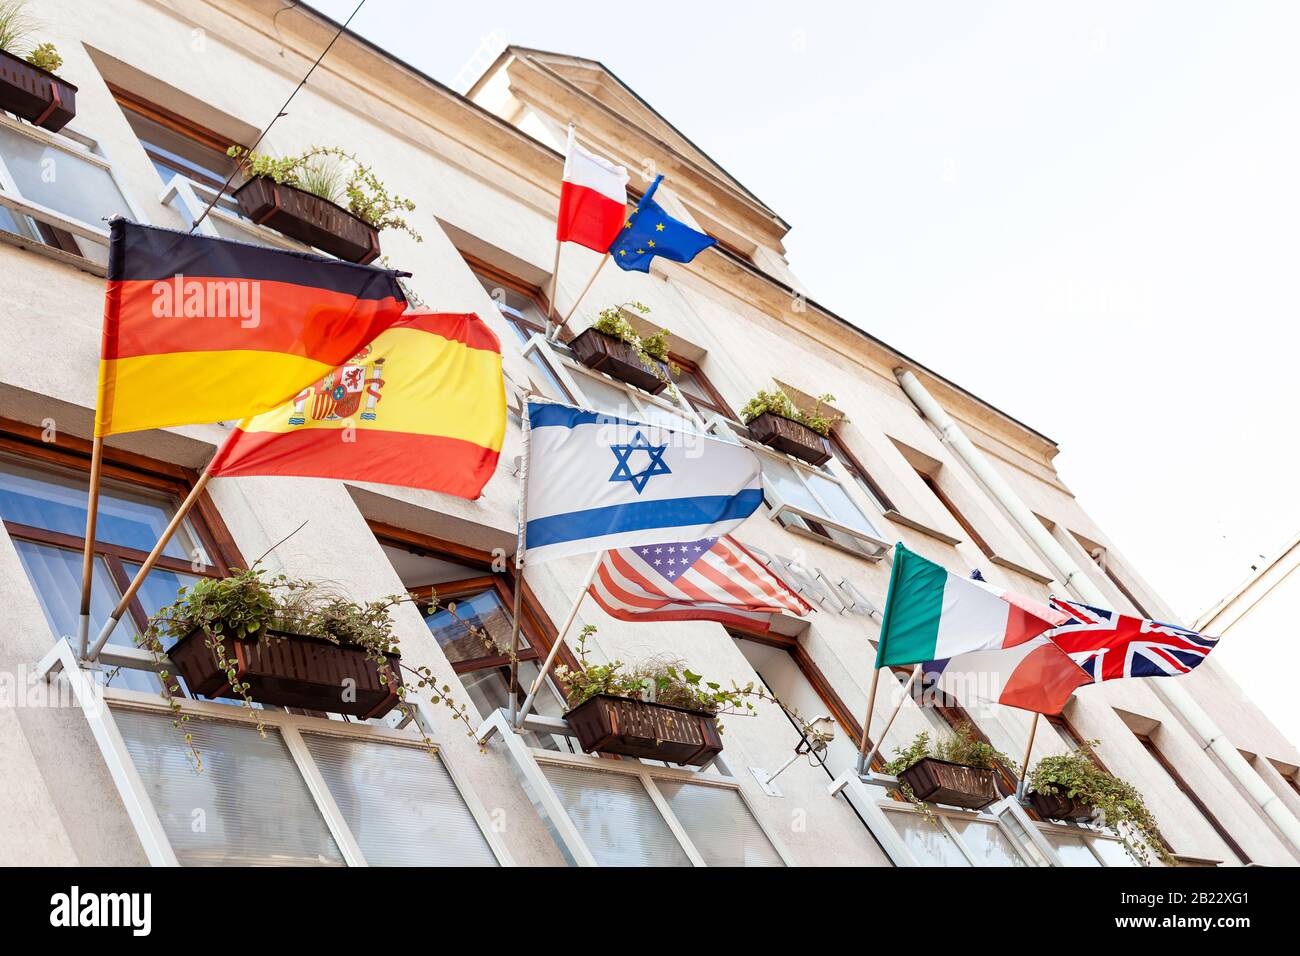 Plusieurs drapeaux agitant sur une façade de bâtiment au vent, Israël, Allemagne, Espagne, États-Unis, Pologne, Union européenne, Italie, France, Royaume-Uni, de nombreuses nations Banque D'Images